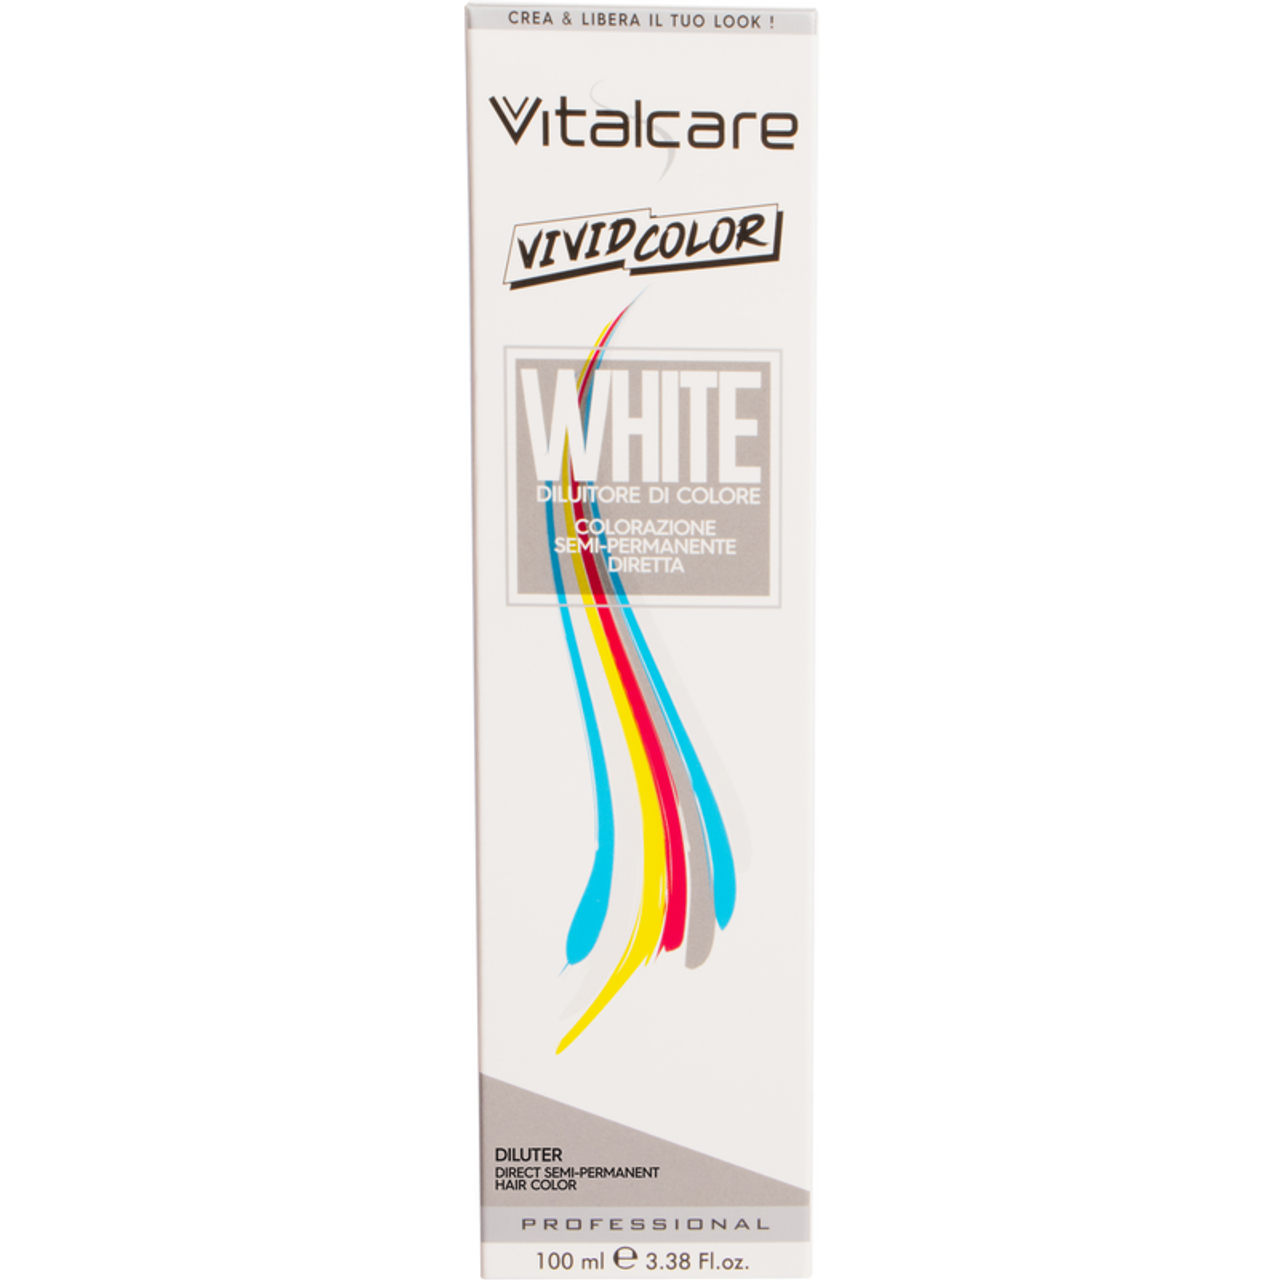 Разбавитель для временного окрашивания волос Vitalcare Vivid Color, 100 мл